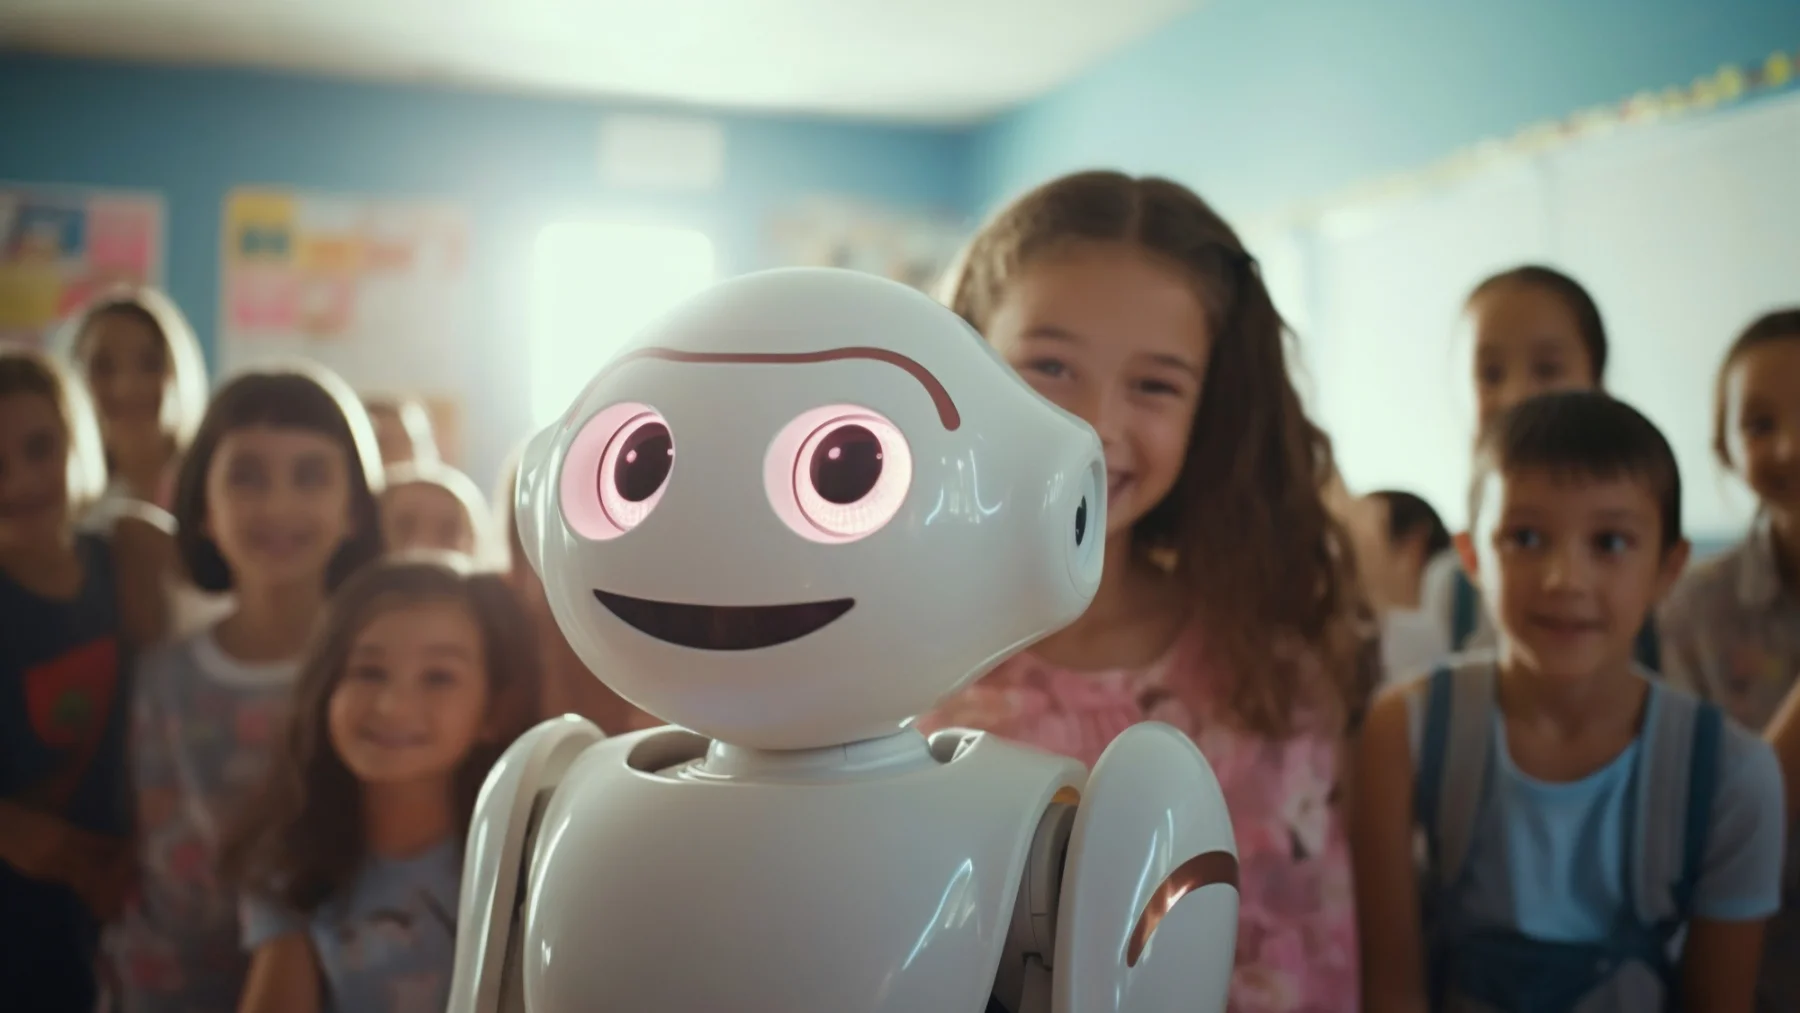 רובוט בינה מלאכותית מחייך באמצע התקהלות ילדים